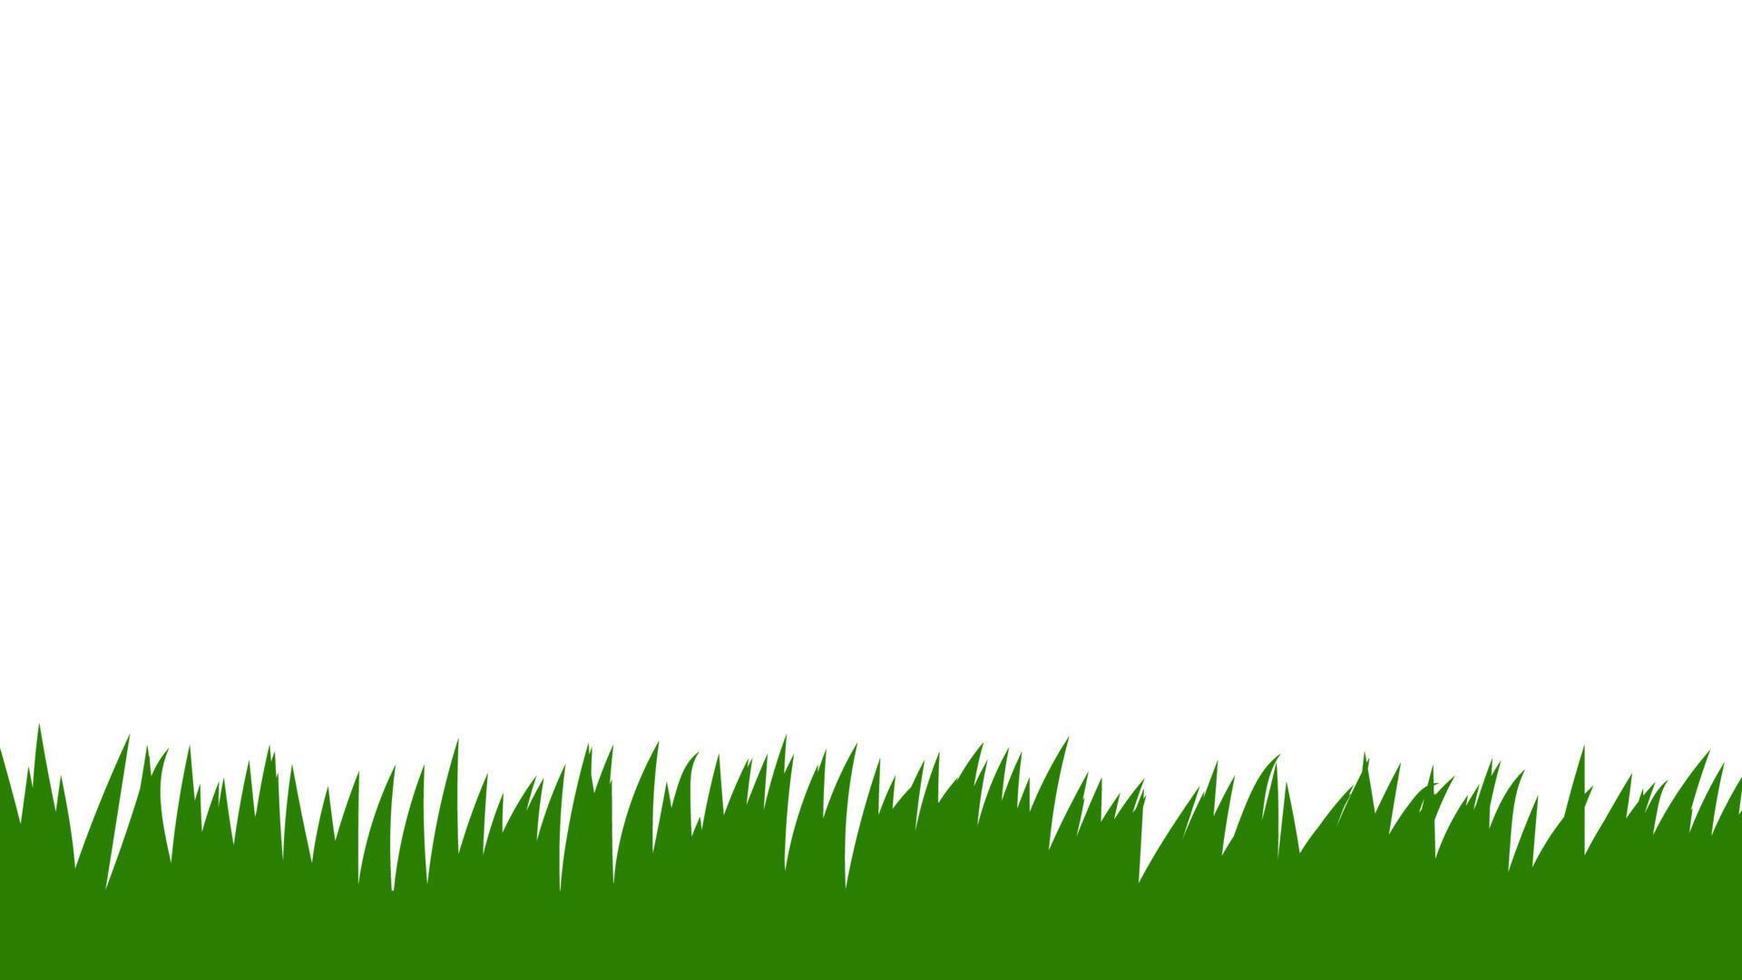 kaart met groen gras geïsoleerd op een witte achtergrond met lege ruimte. vector